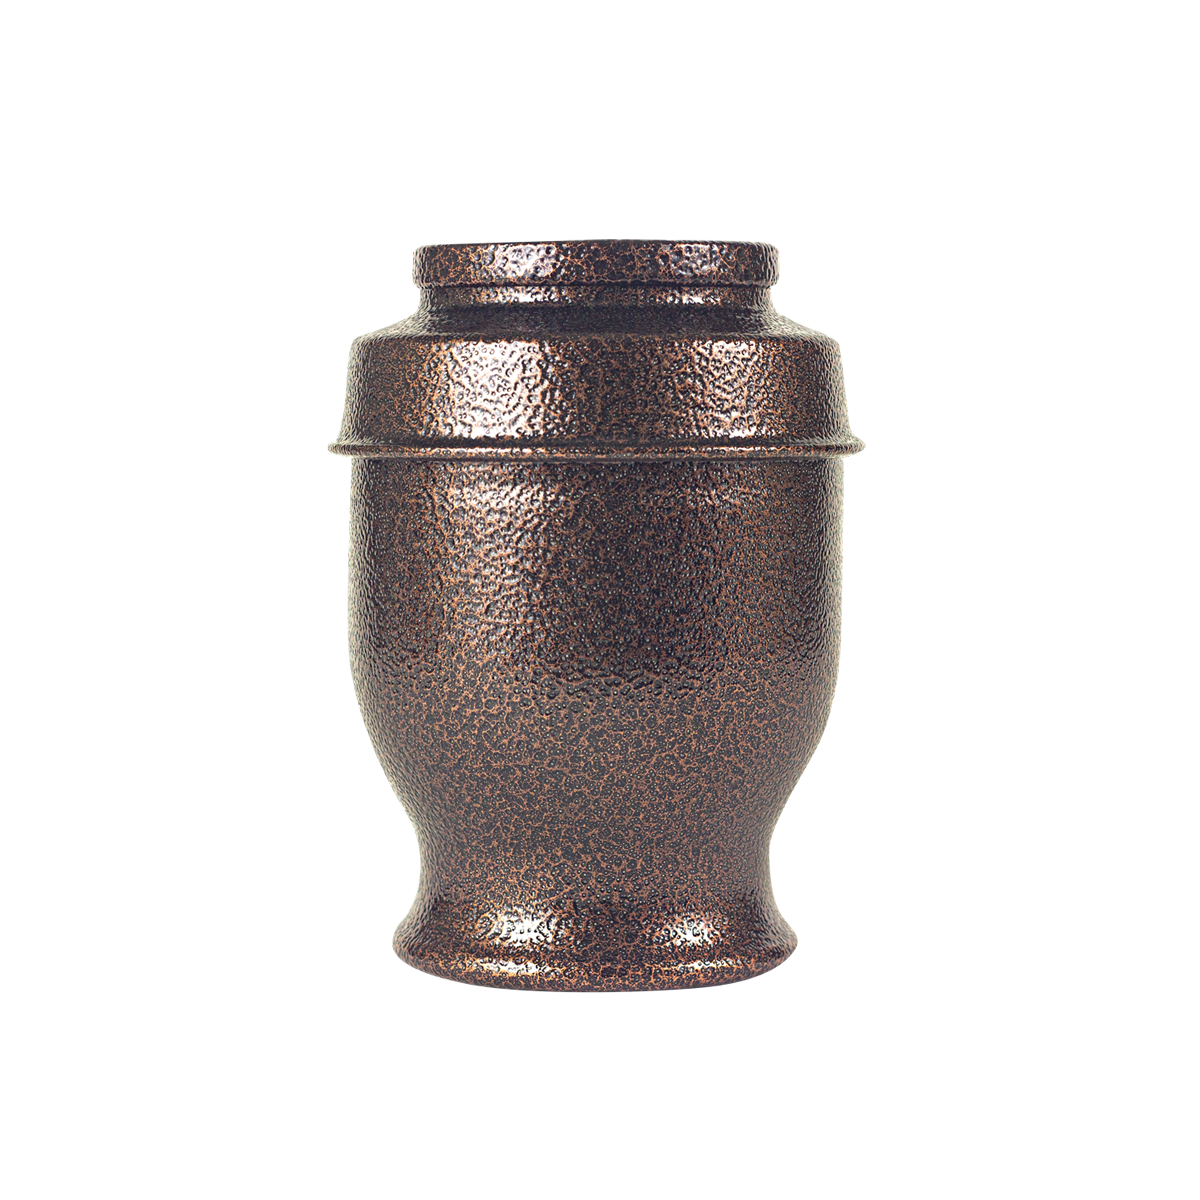 Thamesford Antique Copper Urn